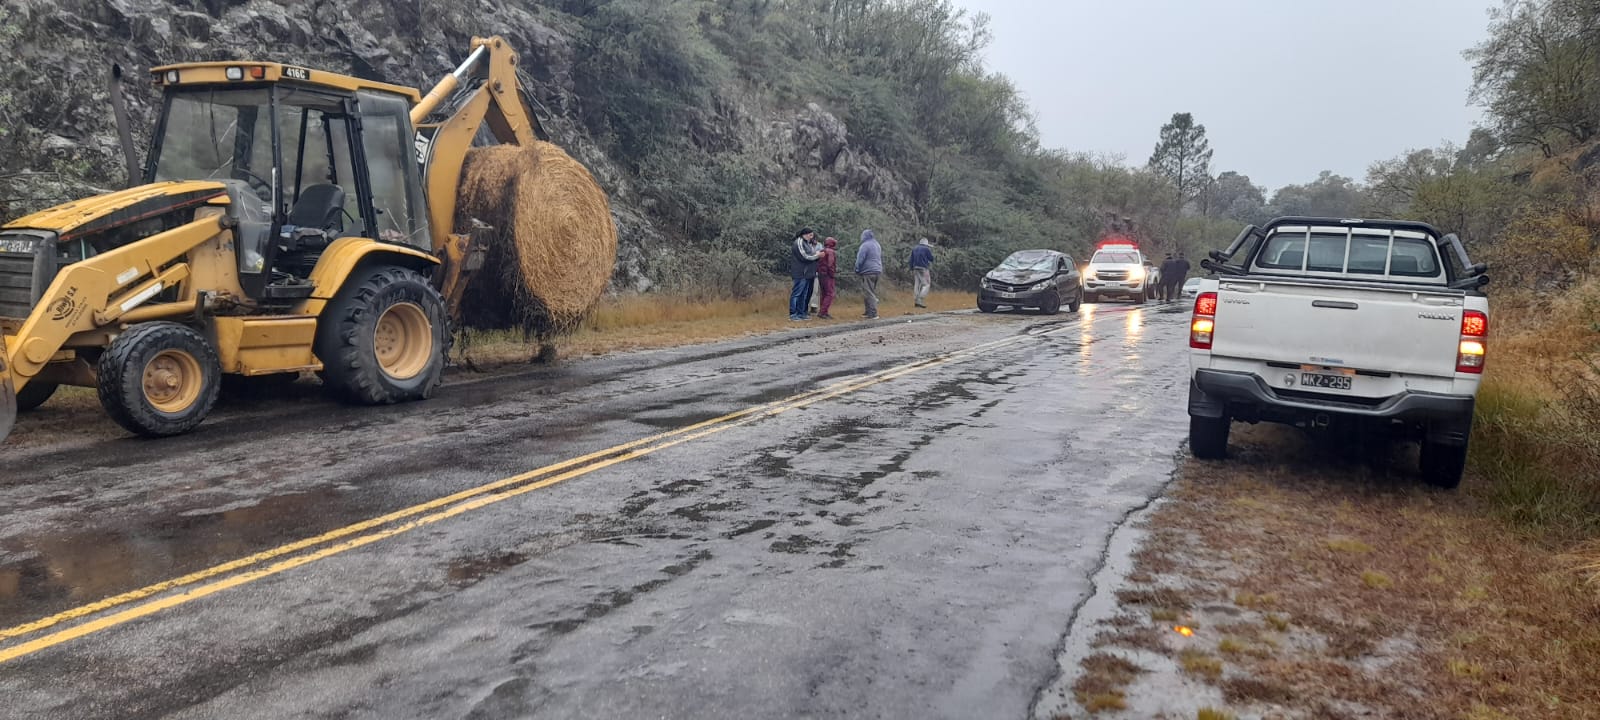 Un auto chocó contra una retropala camino al Cerro Pelado-La Ola Digital